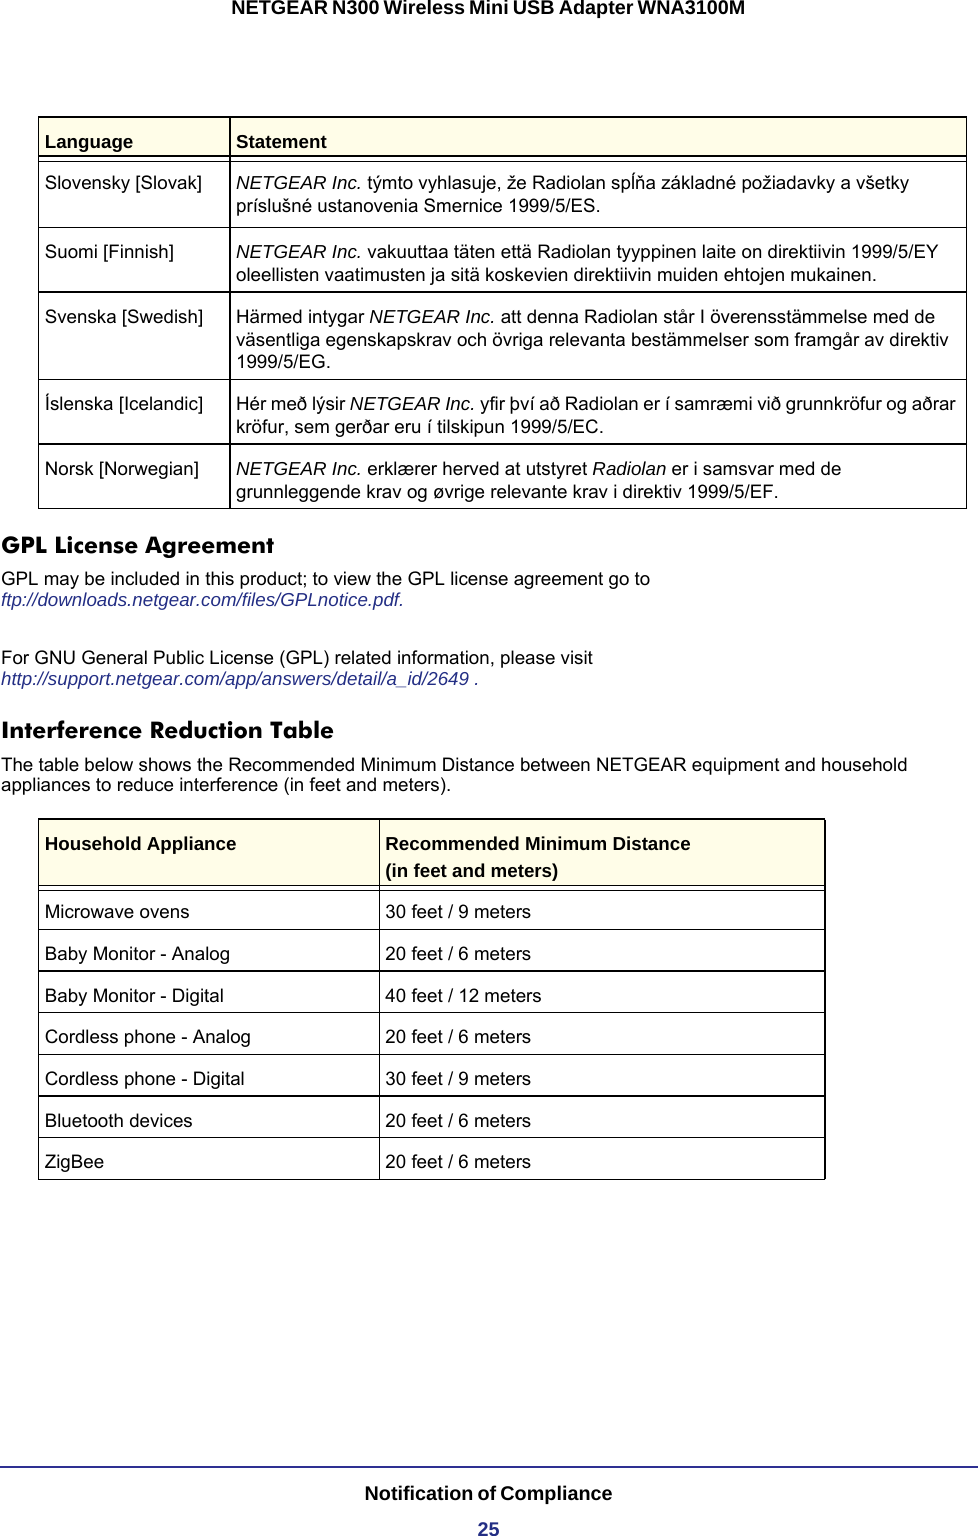 Notification of Compliance25NETGEAR N300 Wireless Mini USB Adapter WNA3100MGPL License AgreementGPL may be included in this product; to view the GPL license agreement go to ftp://downloads.netgear.com/files/GPLnotice.pdf. For GNU General Public License (GPL) related information, please visit http://support.netgear.com/app/answers/detail/a_id/2649 .Interference Reduction TableThe table below shows the Recommended Minimum Distance between NETGEAR equipment and household appliances to reduce interference (in feet and meters).Household Appliance Recommended Minimum Distance(in feet and meters) Microwave ovens 30 feet / 9 metersBaby Monitor - Analog 20 feet / 6 metersBaby Monitor - Digital 40 feet / 12 metersCordless phone - Analog 20 feet / 6 metersCordless phone - Digital 30 feet / 9 metersBluetooth devices 20 feet / 6 metersZigBee 20 feet / 6 metersSlovensky [Slovak] NETGEAR Inc. týmto vyhlasuje, že Radiolan spĺňa základné požiadavky a všetky príslušné ustanovenia Smernice 1999/5/ES.Suomi [Finnish] NETGEAR Inc. vakuuttaa täten että Radiolan tyyppinen laite on direktiivin 1999/5/EY oleellisten vaatimusten ja sitä koskevien direktiivin muiden ehtojen mukainen.Svenska [Swedish] Härmed intygar NETGEAR Inc. att denna Radiolan står I överensstämmelse med de väsentliga egenskapskrav och övriga relevanta bestämmelser som framgår av direktiv 1999/5/EG.Íslenska [Icelandic] Hér með lýsir NETGEAR Inc. yfir því að Radiolan er í samræmi við grunnkröfur og aðrar kröfur, sem gerðar eru í tilskipun 1999/5/EC.Norsk [Norwegian] NETGEAR Inc. erklærer herved at utstyret Radiolan er i samsvar med de grunnleggende krav og øvrige relevante krav i direktiv 1999/5/EF.Language Statement